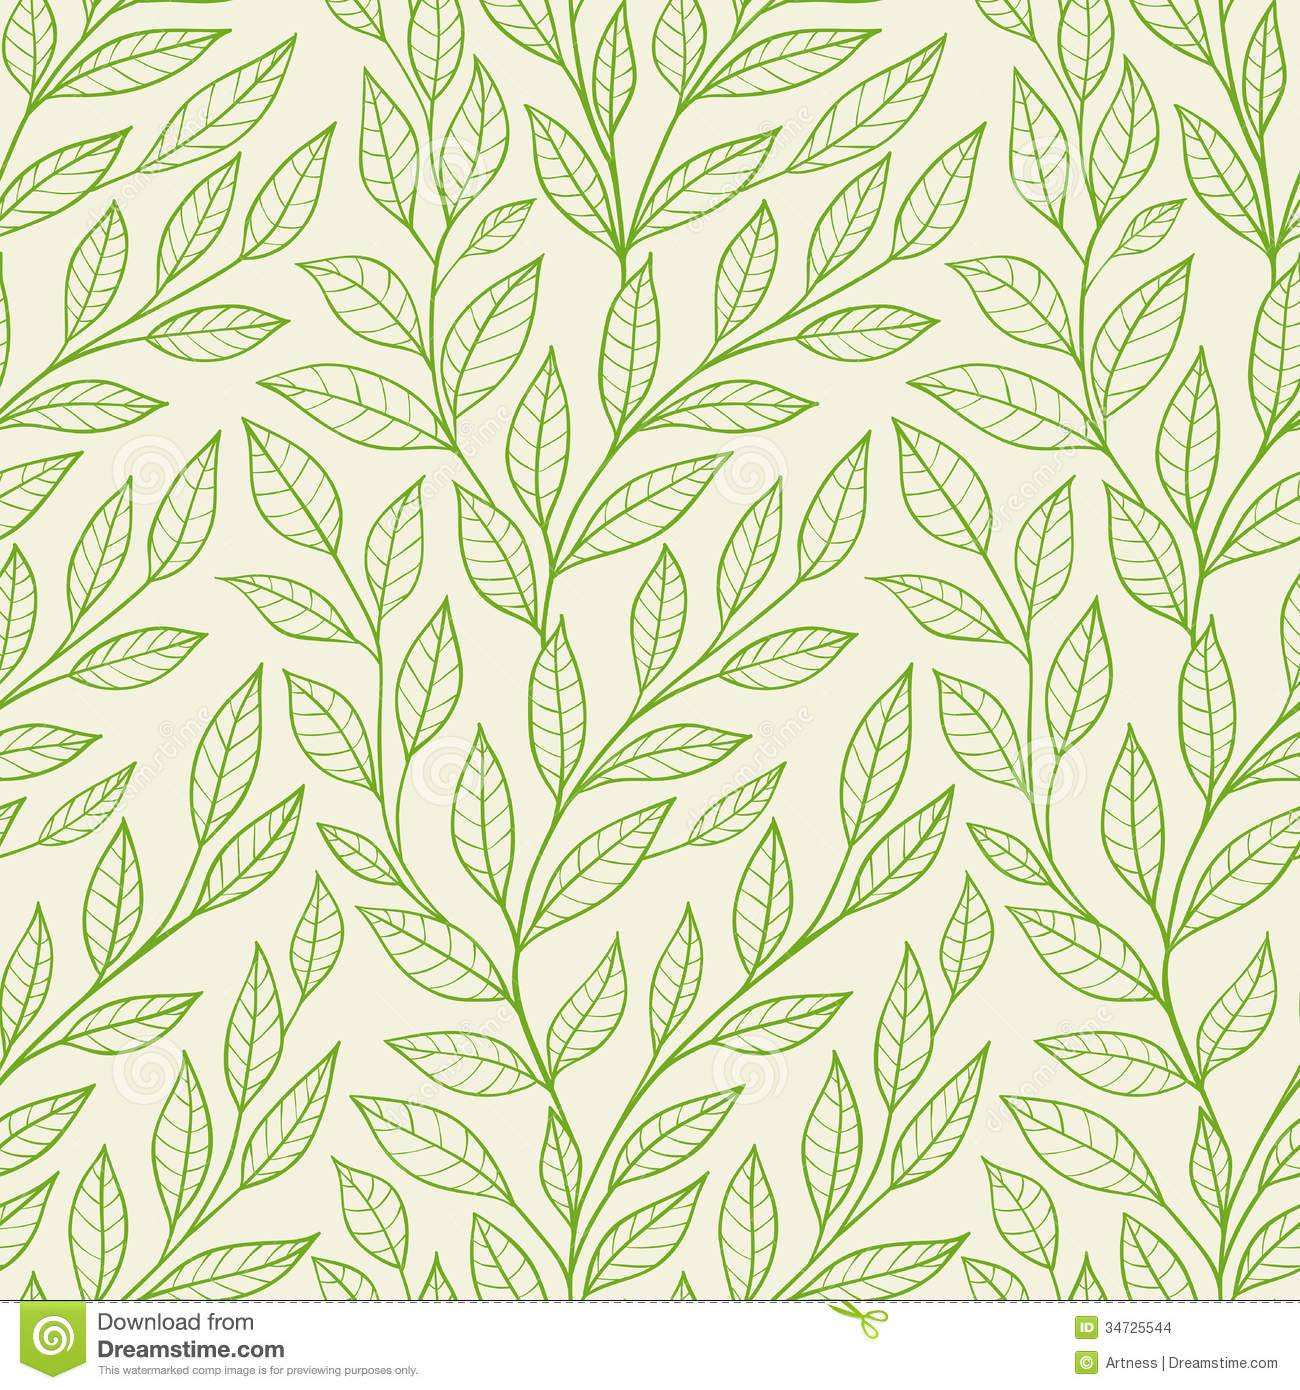 13 Vector Leaves Pattern Images - Vector Leaf Pattern, Green Leaf